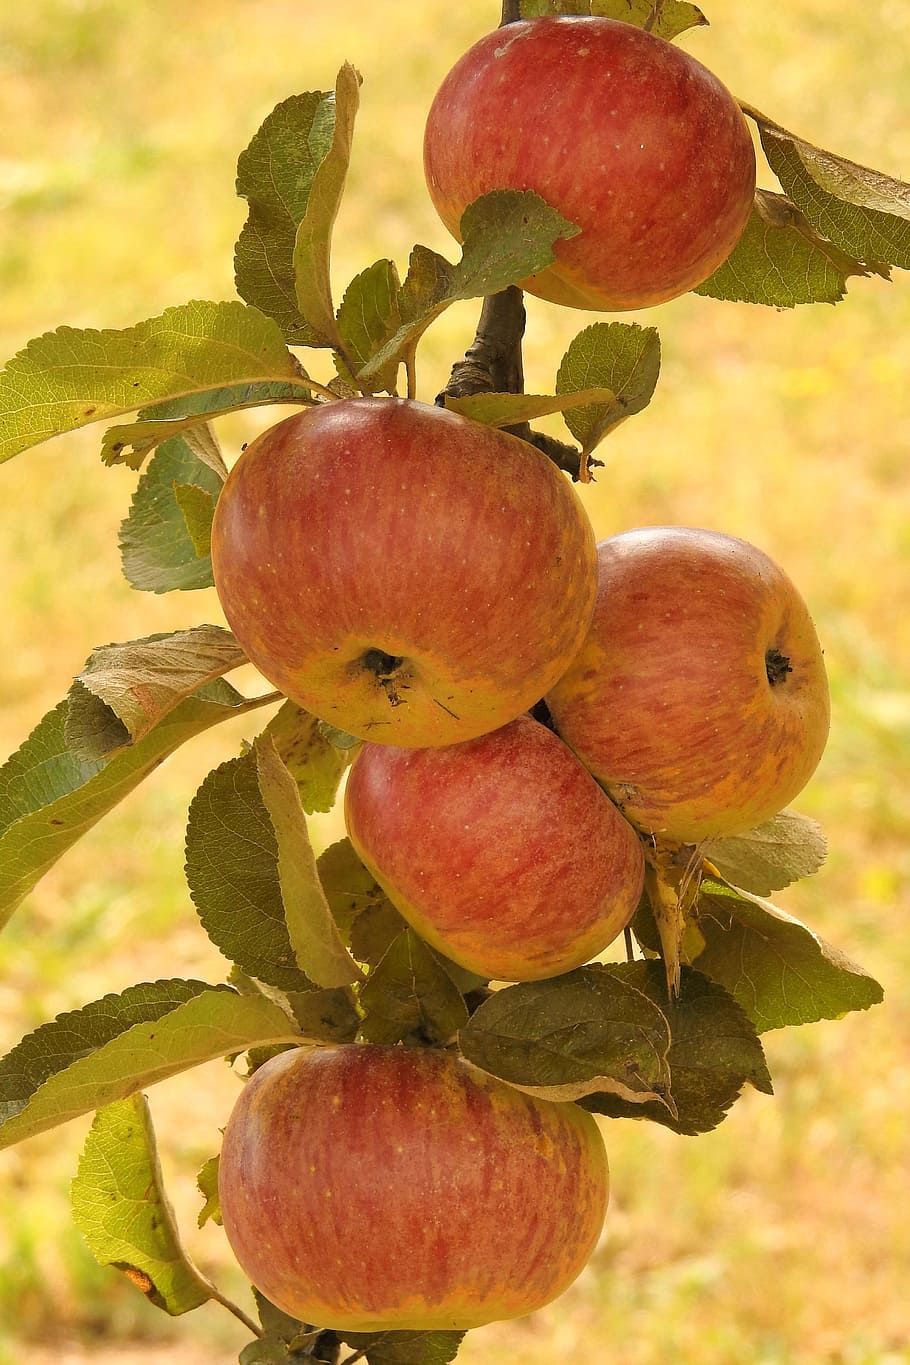 apple, apple tree, branch, ripe, kernobstgewaechs, fruits, fruit, healthy eating, food, food and drink